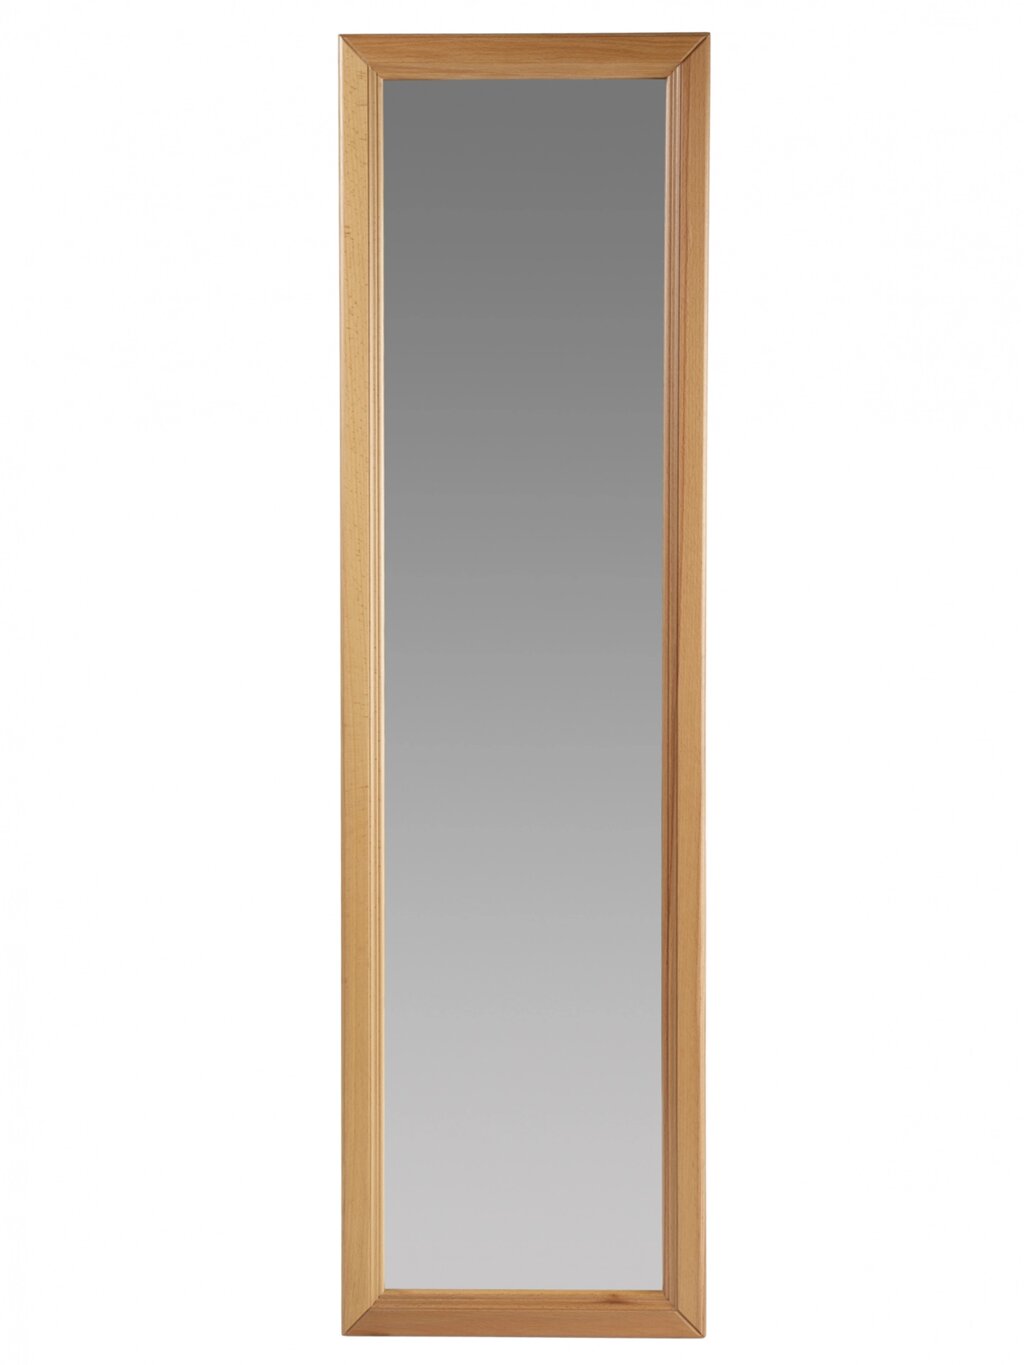 Зеркало настенное Селена 1 светло-коричневый 119 см х 33 | 5 см от компании M-Lion мебель - фото 1